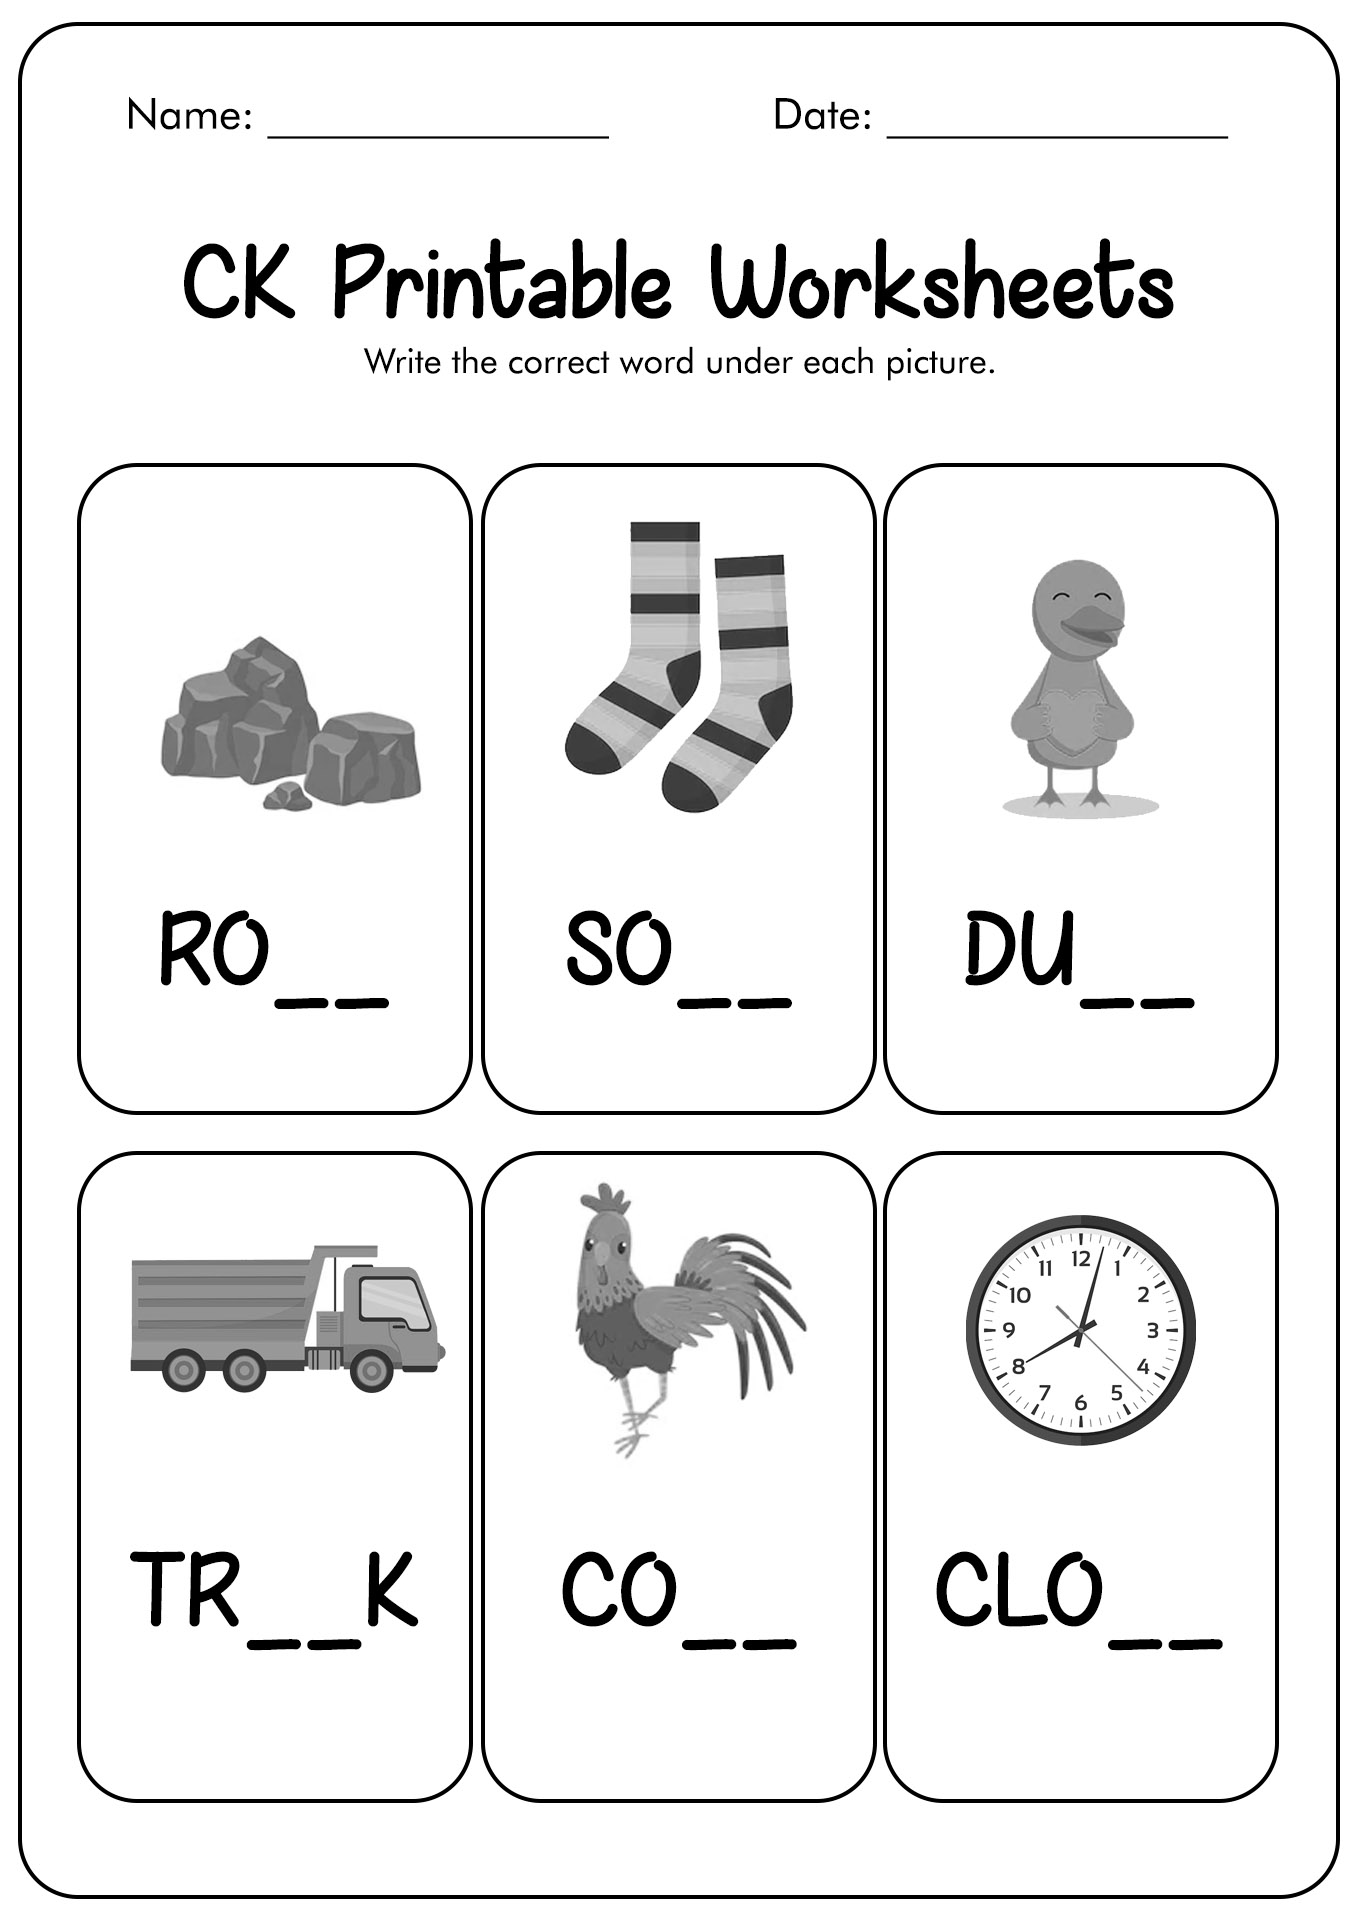 CK Printable Worksheets